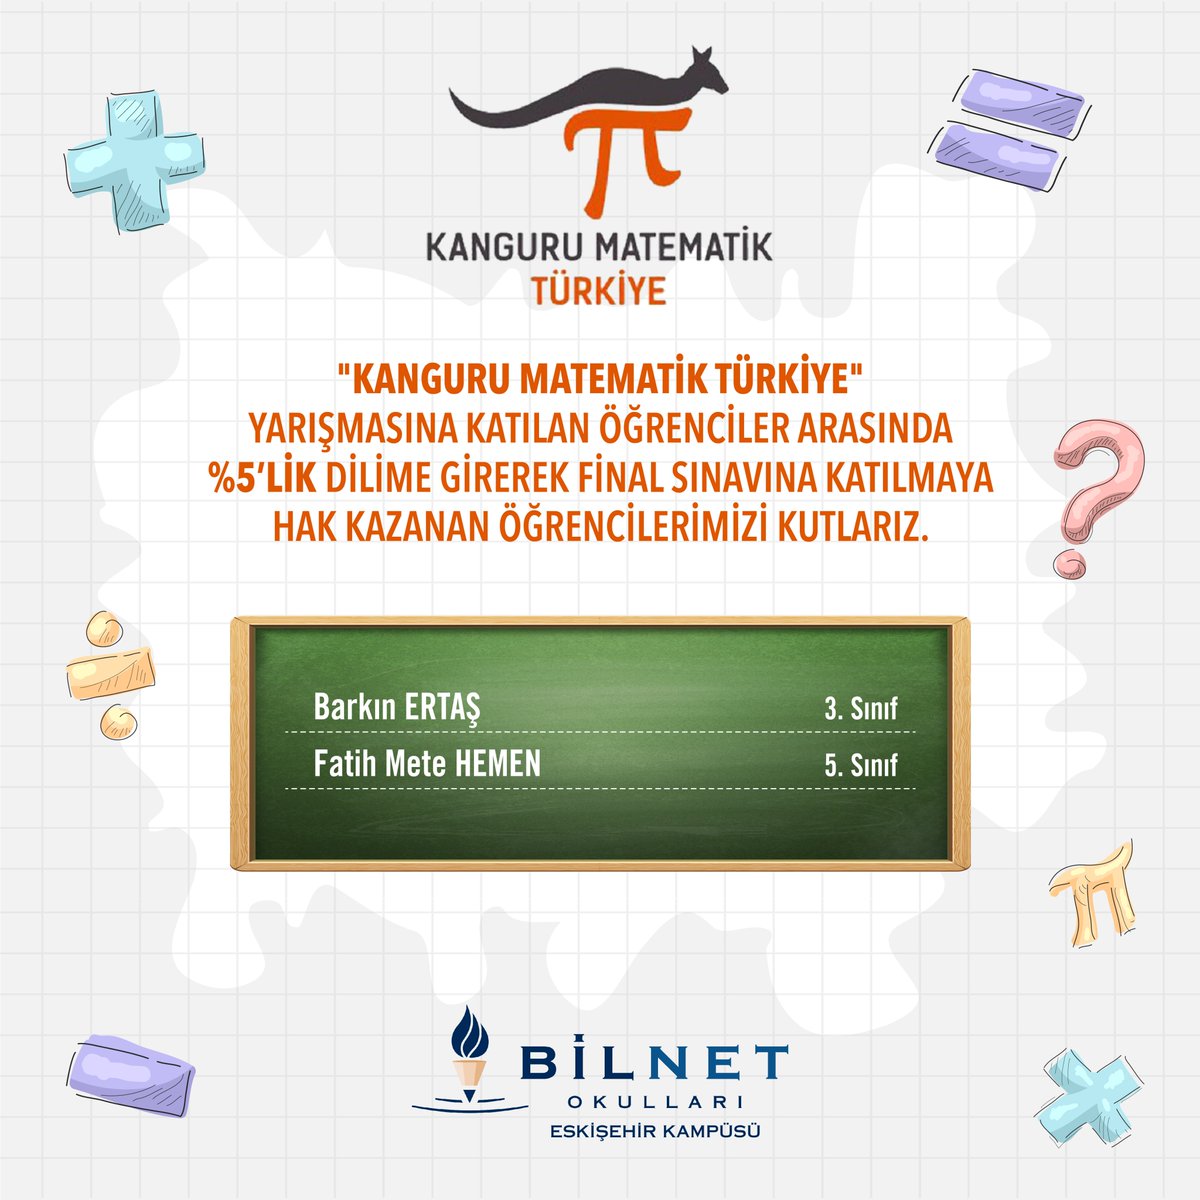 'Kanguru Matematik Türkiye' yarışmasına katılan öğrenciler arasında %5'lik dilime girerek final sınavına katılmaya hak kazanan öğrencilerimizi kutlarız.

#BilnetOkulları #BilnetSchools #KanguruMatematik